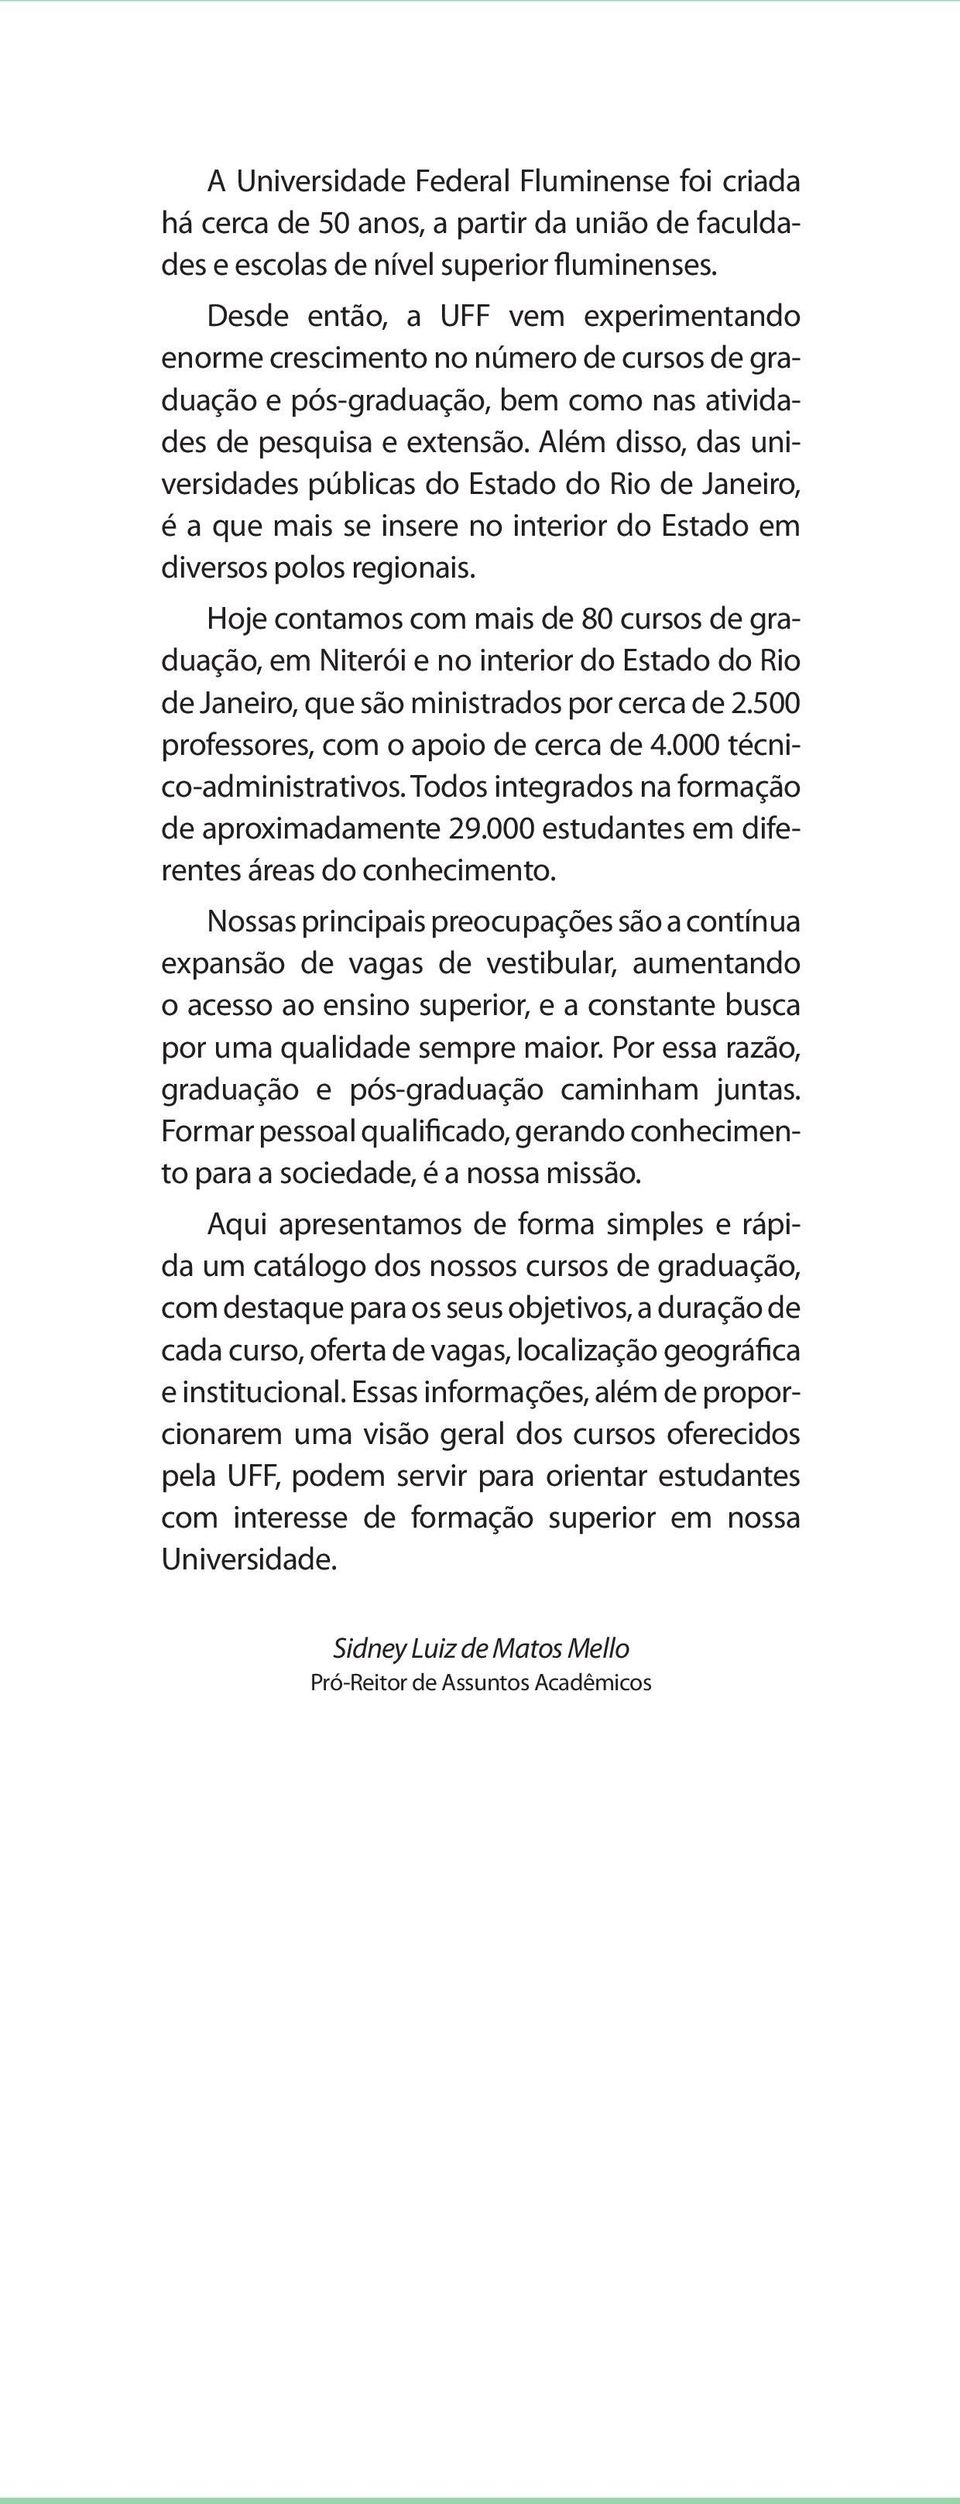 Além disso, das universidades públicas do Estado do Rio de Janeiro, é a que mais se insere no interior do Estado em diversos polos regionais.